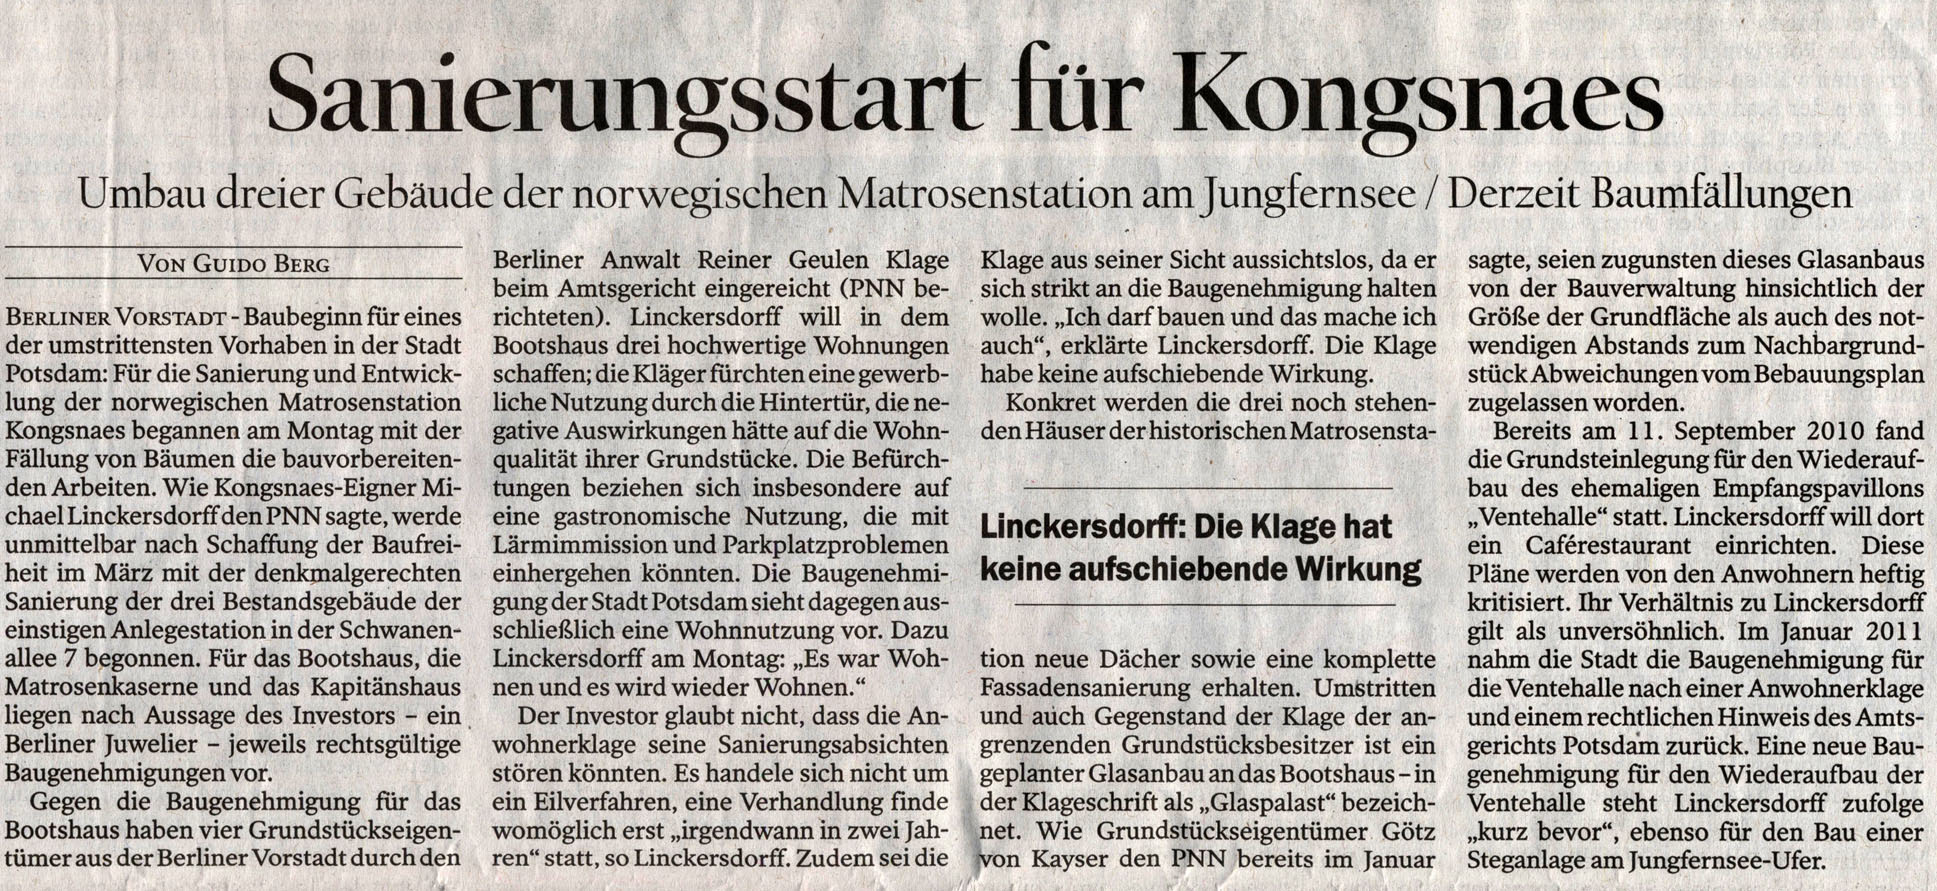 Potsdamer Neueste Nachrichten - 28.02.2012